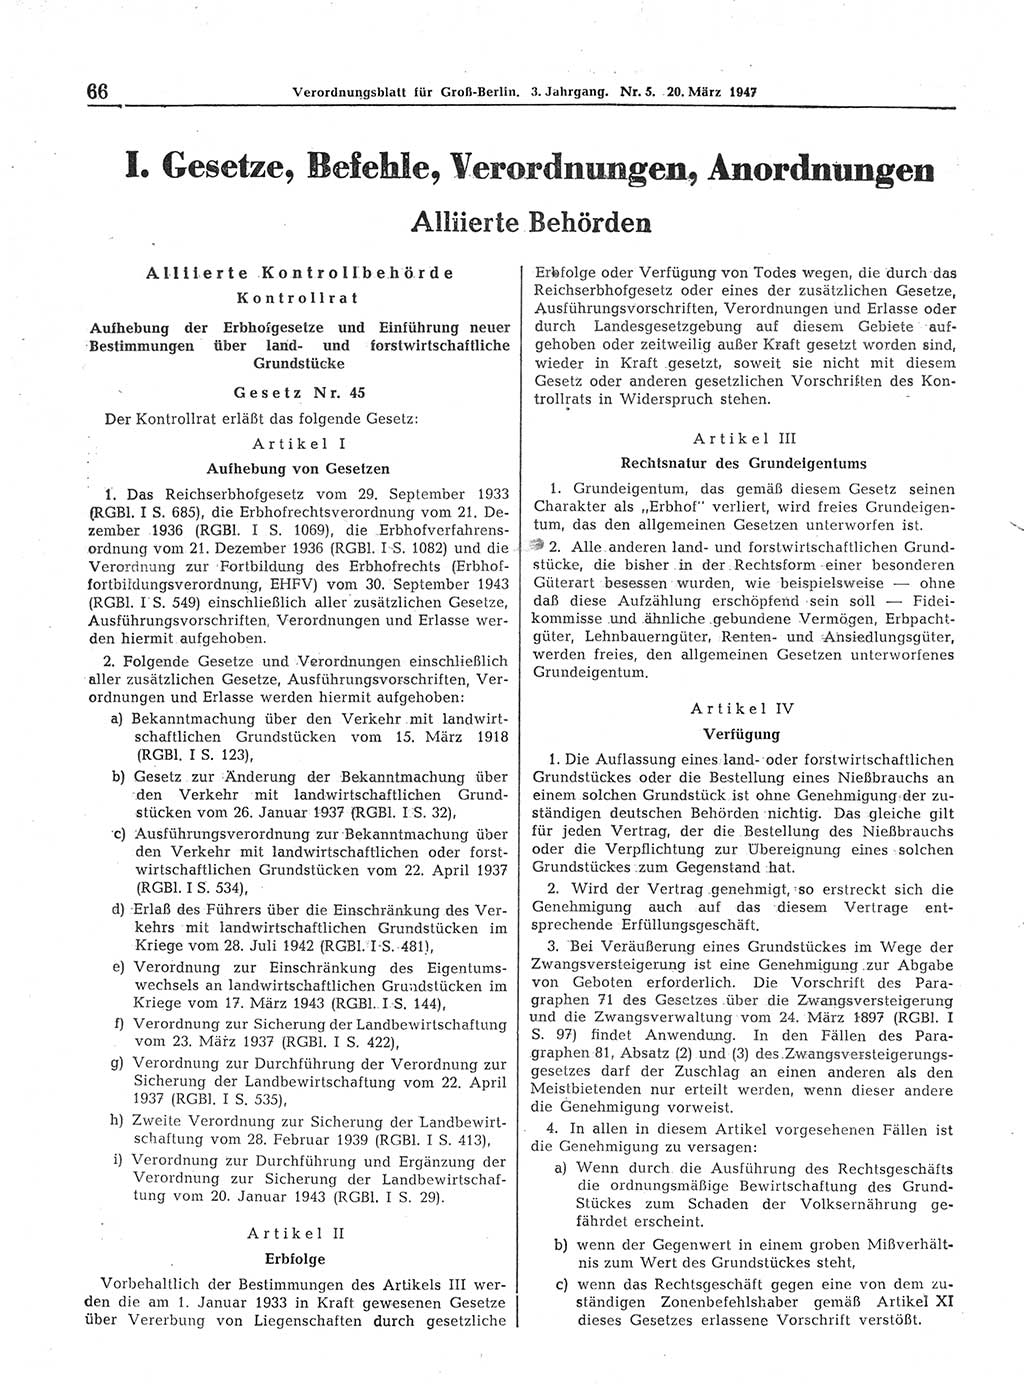 Verordnungsblatt (VOBl.) für Groß-Berlin 1947, Seite 66 (VOBl. Bln. 1947, S. 66)